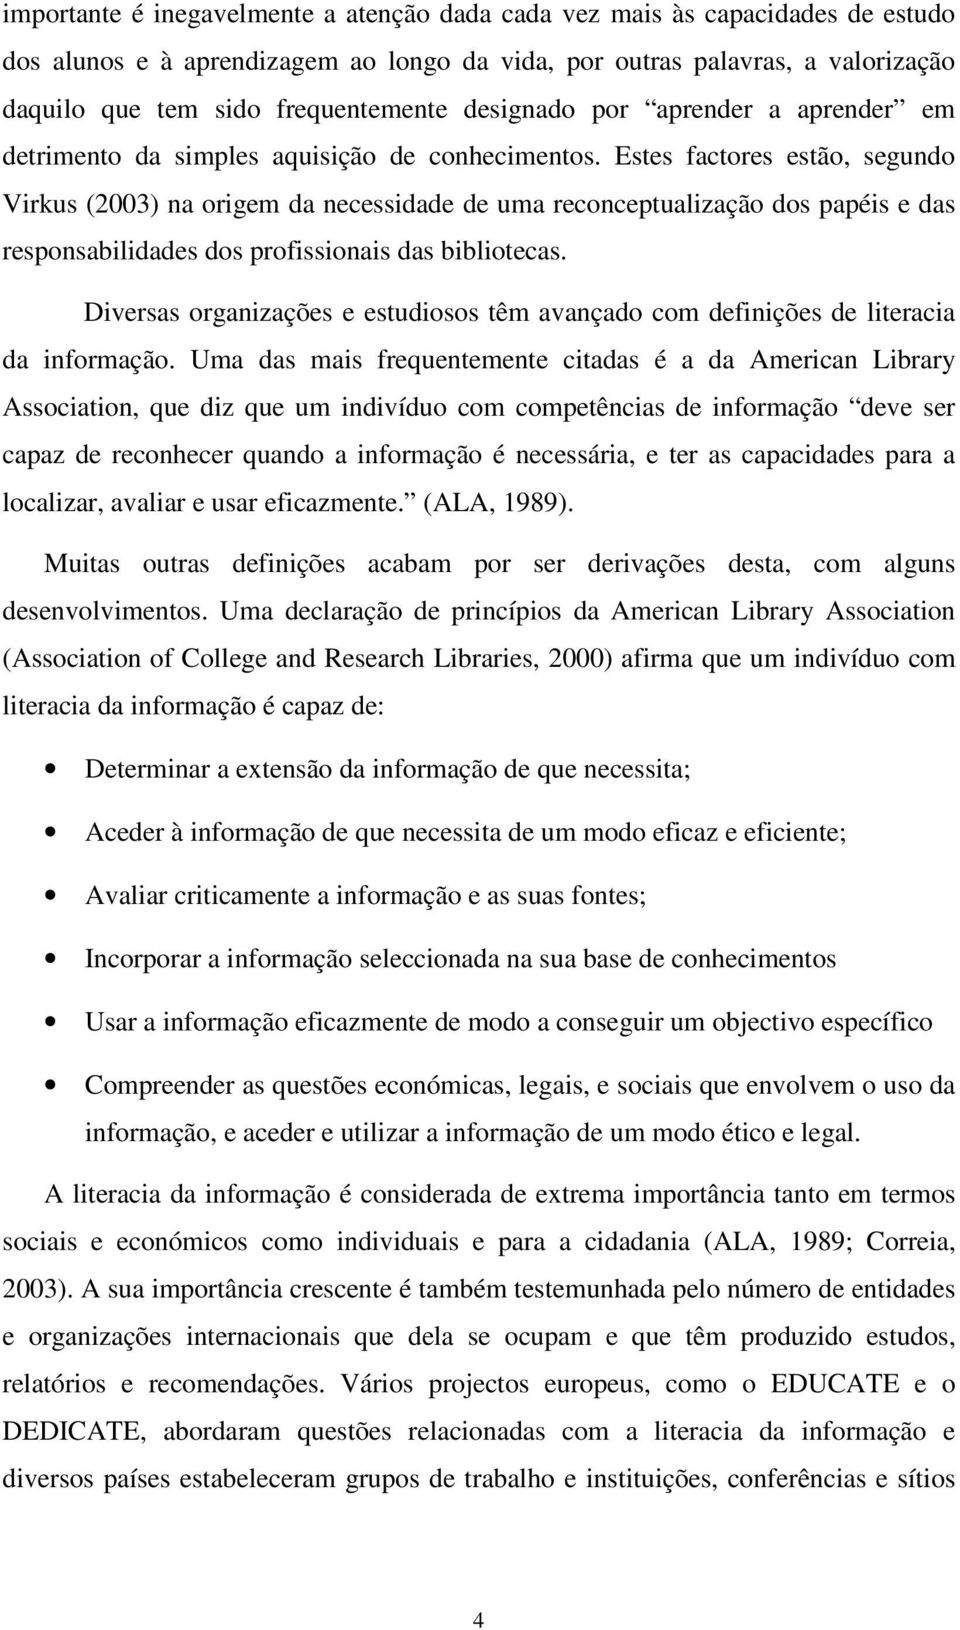 Estes factores estão, segundo Virkus (2003) na origem da necessidade de uma reconceptualização dos papéis e das responsabilidades dos profissionais das bibliotecas.